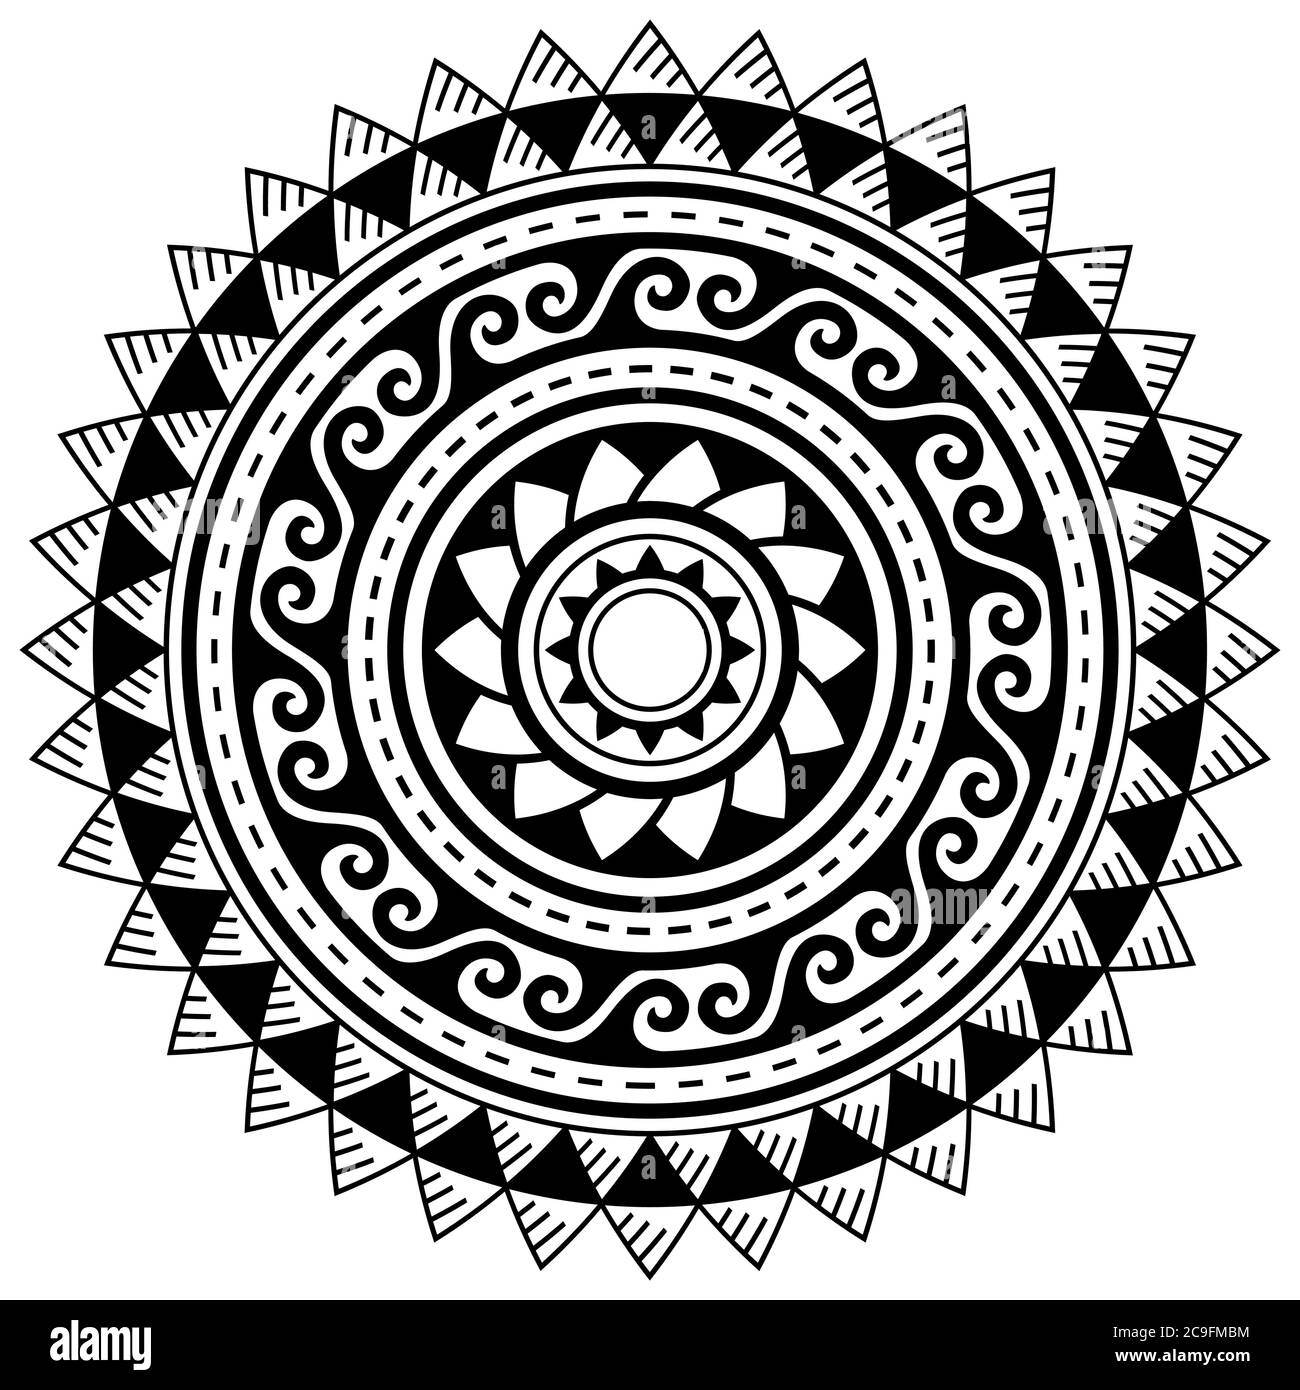 Tribal geometrisches Mandala Vektor Design, polynesisches hawaiianisches Tattoo Stil Muster mit Wellen, Dreiecken und abstrakten Formen Stock Vektor